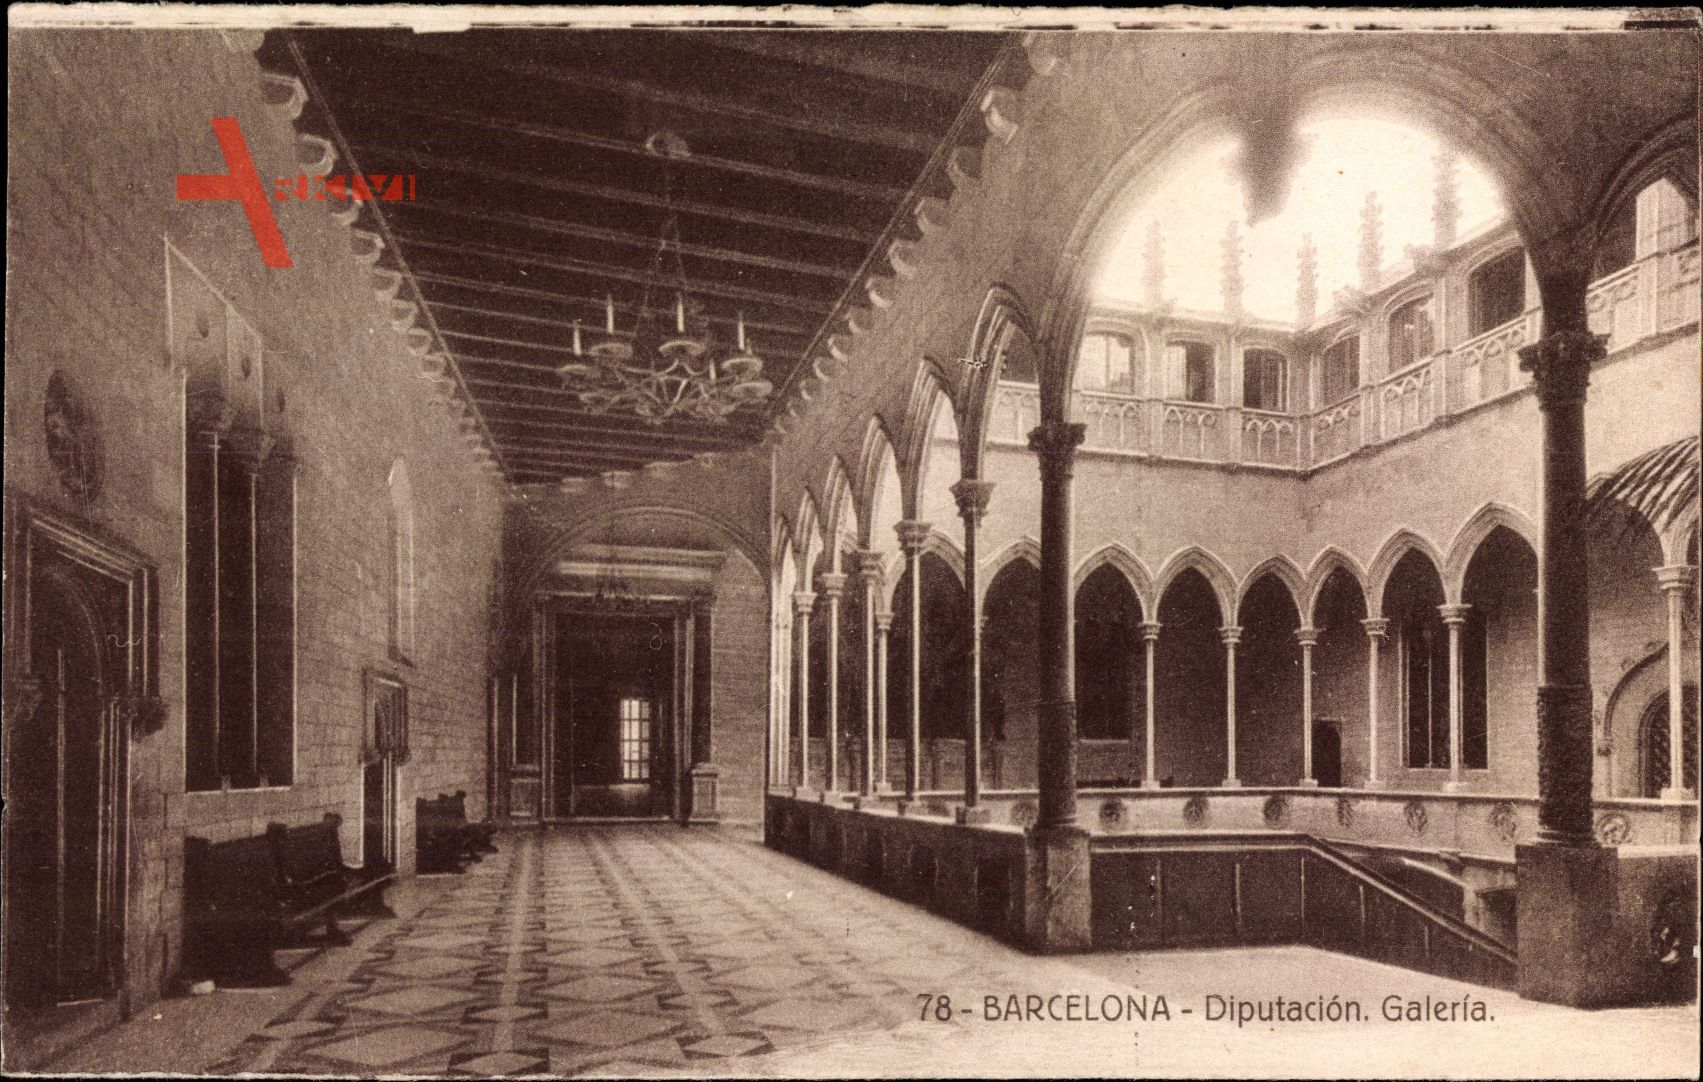 Barcelona Katalonien, Diputacion, Galeria, Rathaus, Innenansicht